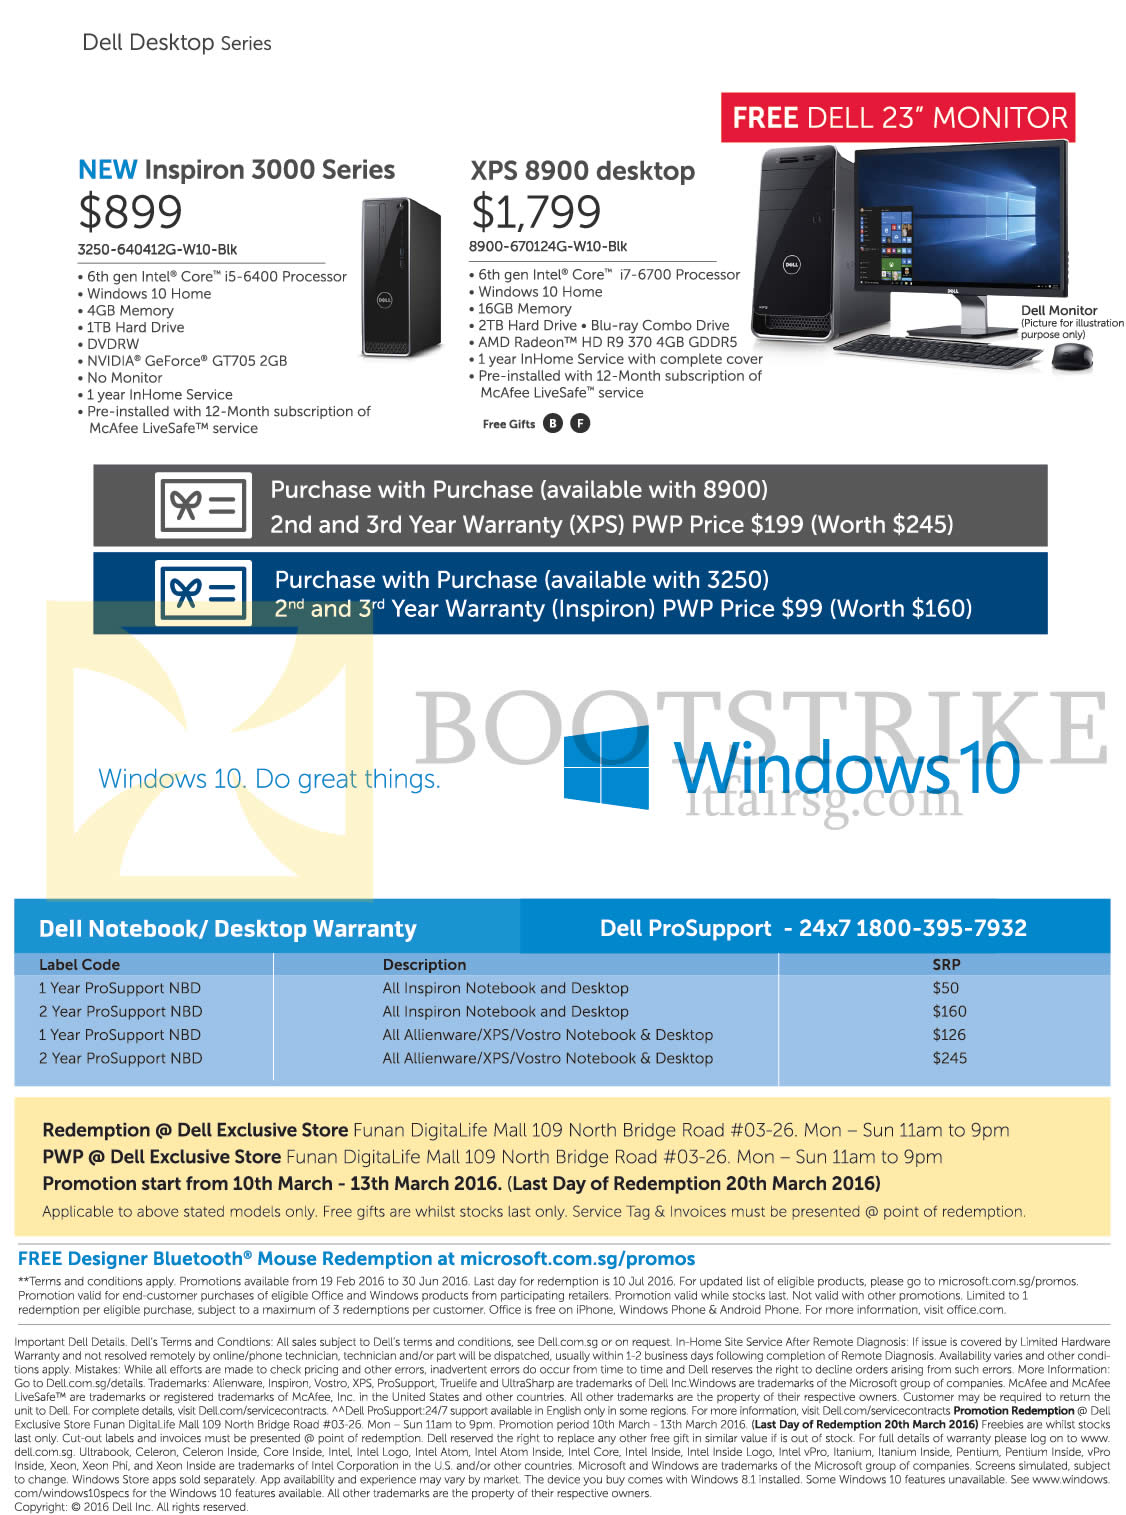 IT SHOW 2016 price list image brochure of Dell Desktop PCs Inspiron 3000 Series, XPS 8900 Desktop